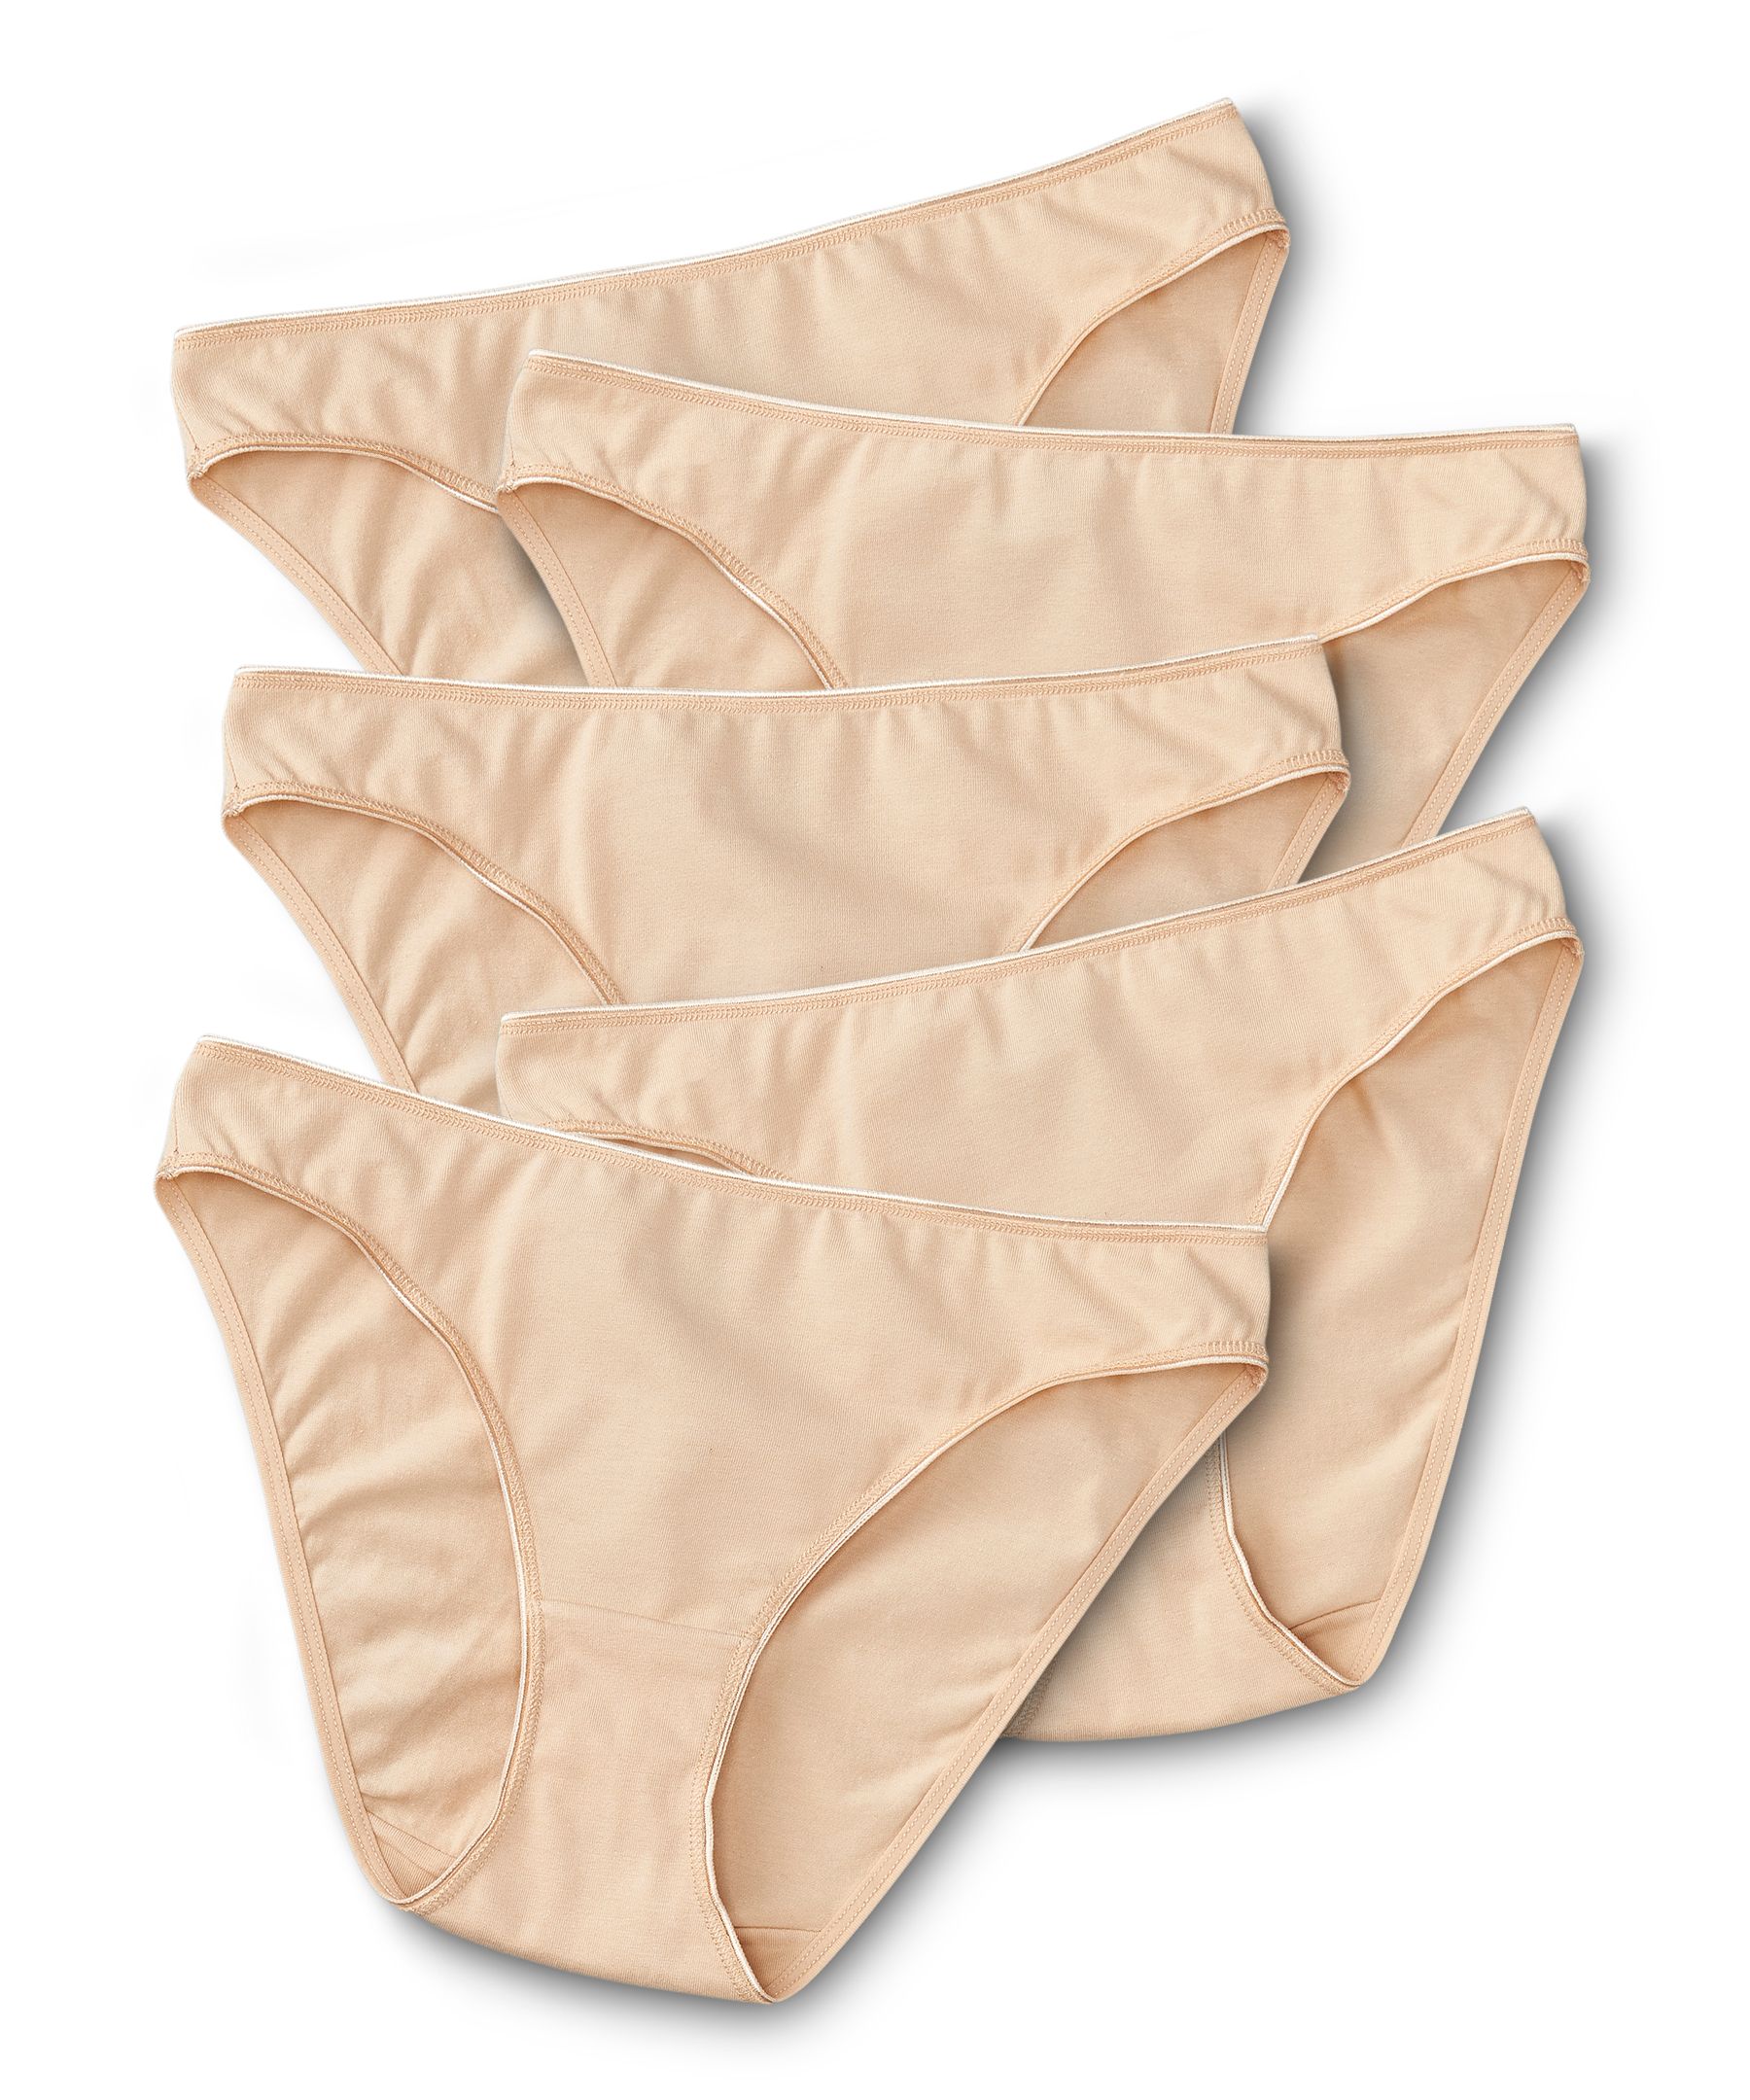 Essentials Women's Ribbed Cotton Thong Underwear